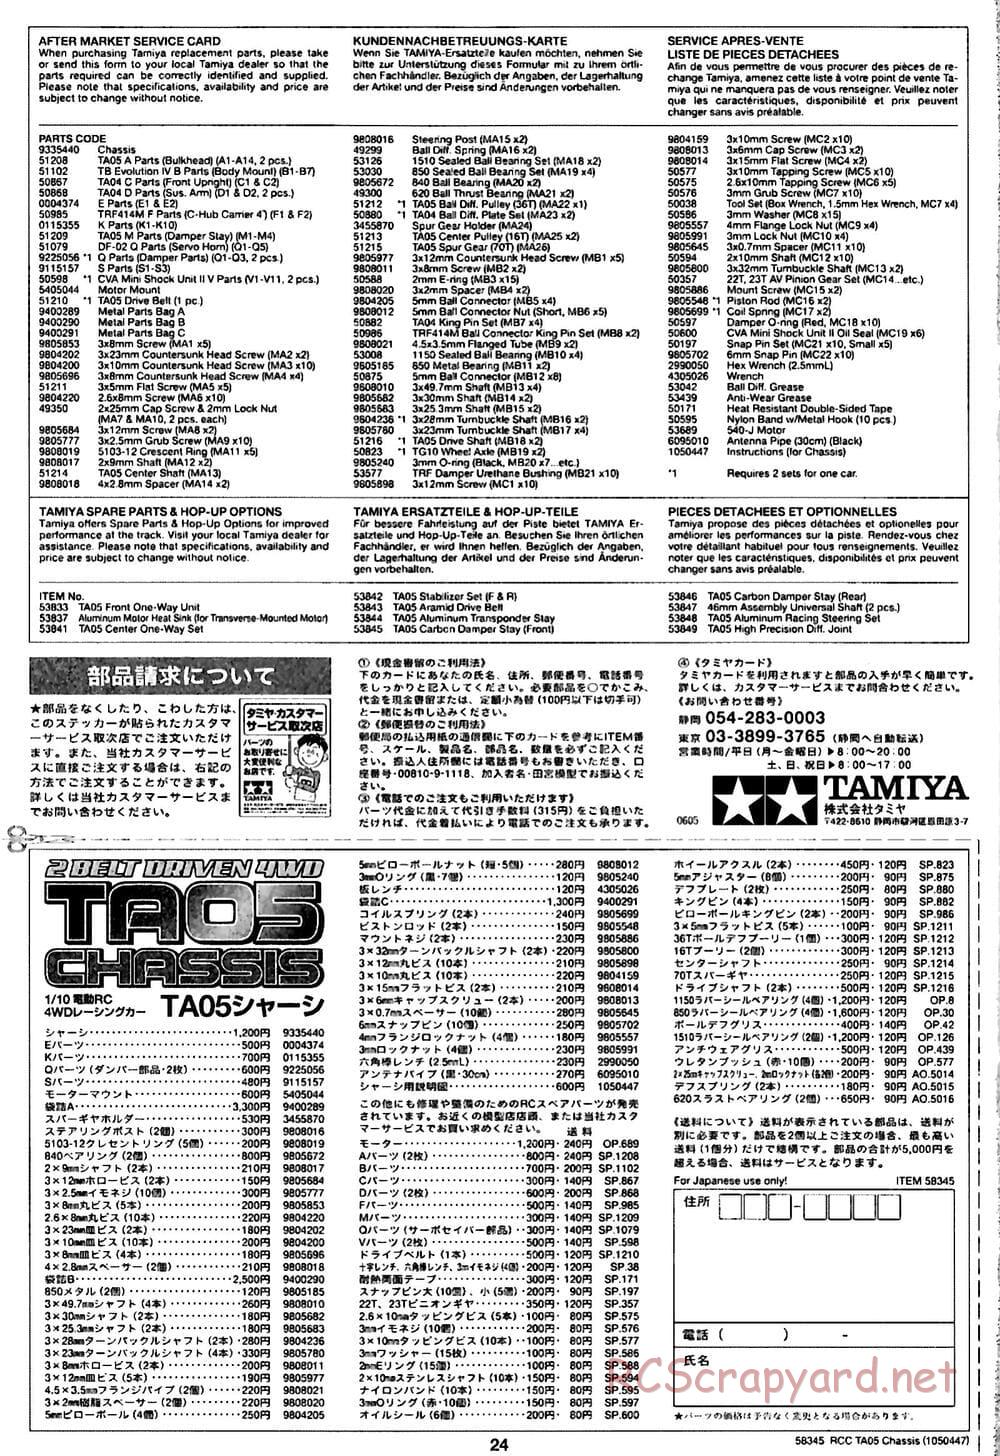 Tamiya - TA05 Chassis - Manual - Page 24